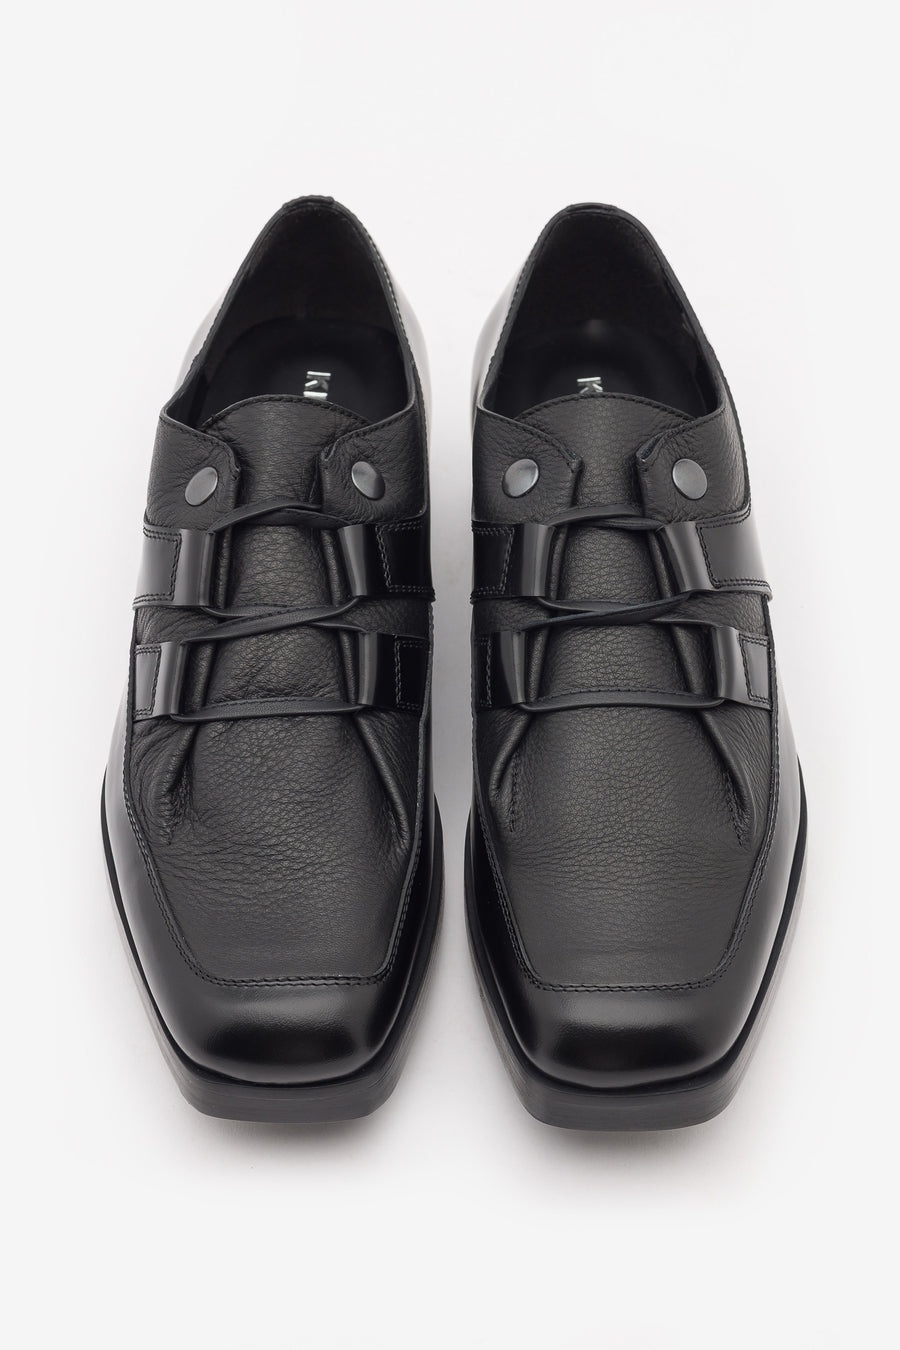 Kiko Kostadinov Priam Lace Up Shoes in Black | notreshop | REVERSIBLE